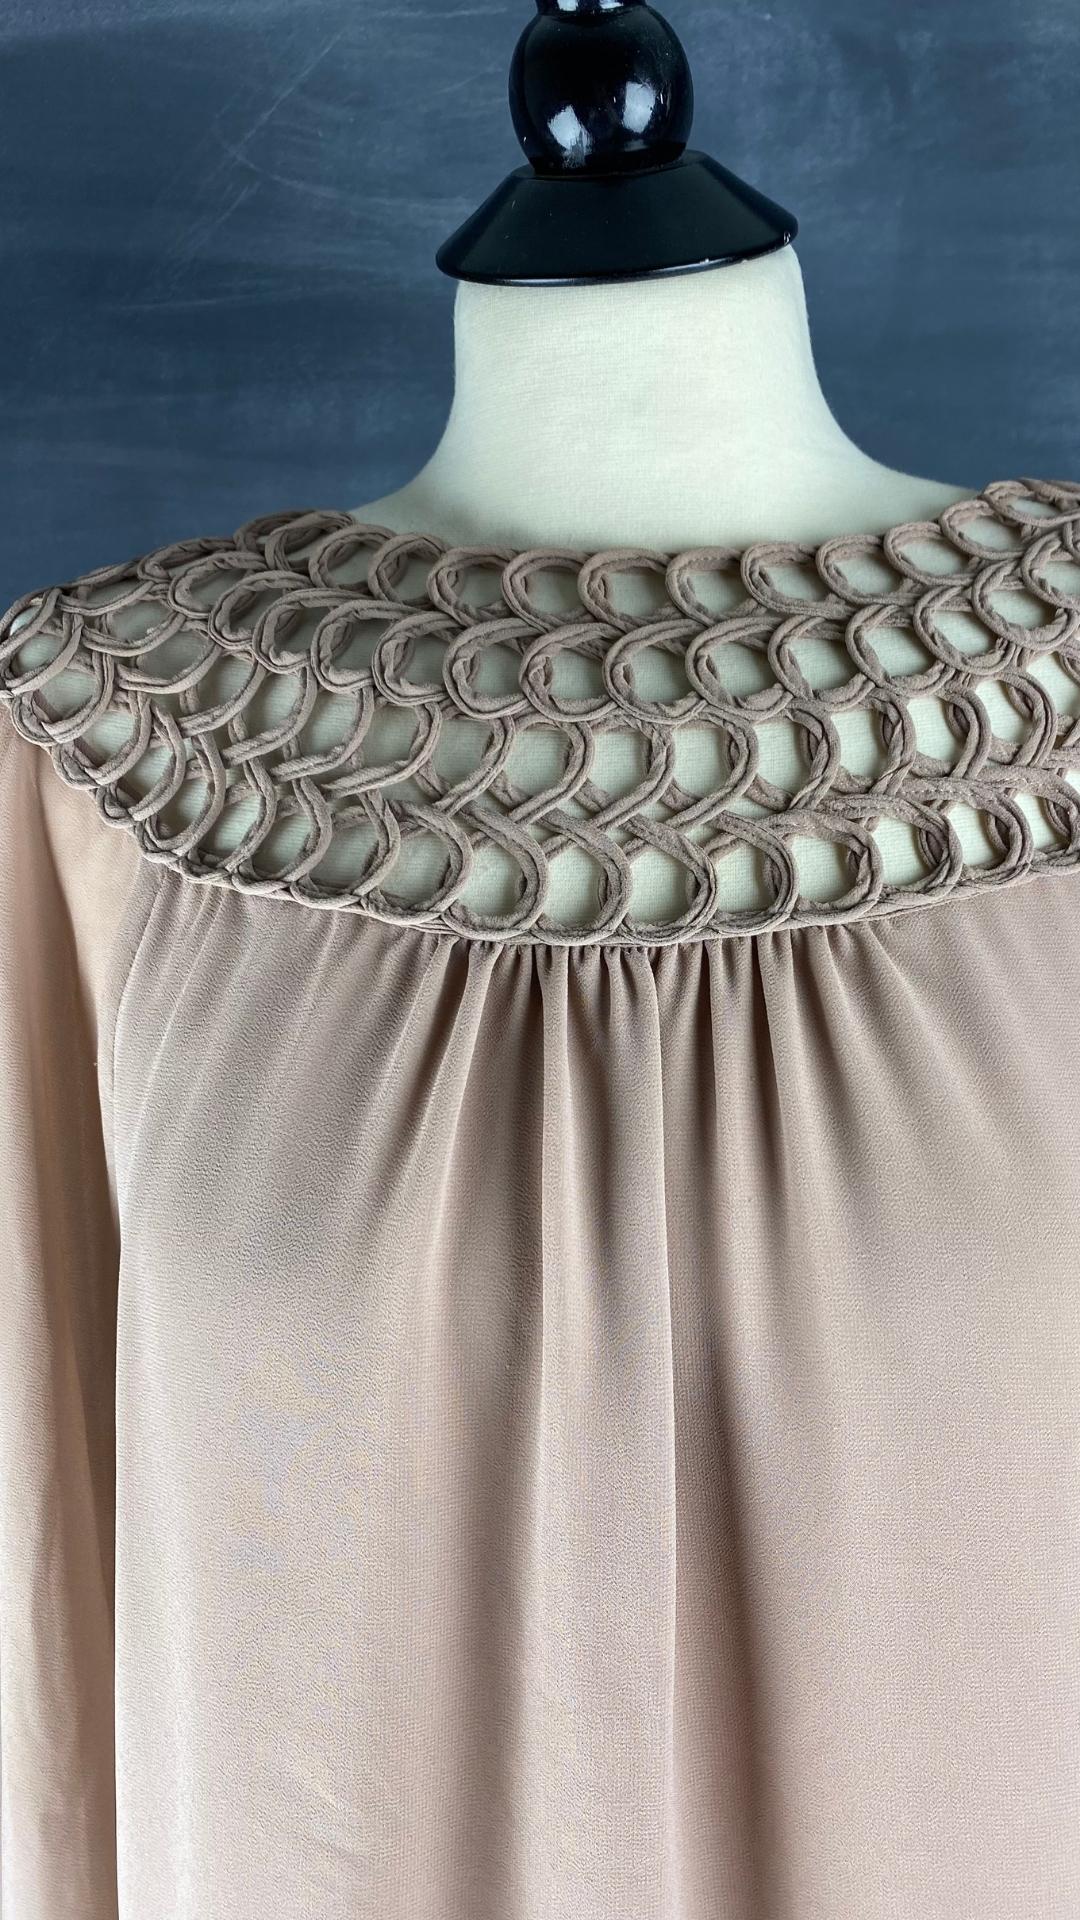 Cette splendide blouse possède un col détaillé ajouré spectaculaire, vue de face, détails du col et du devant de la blouse